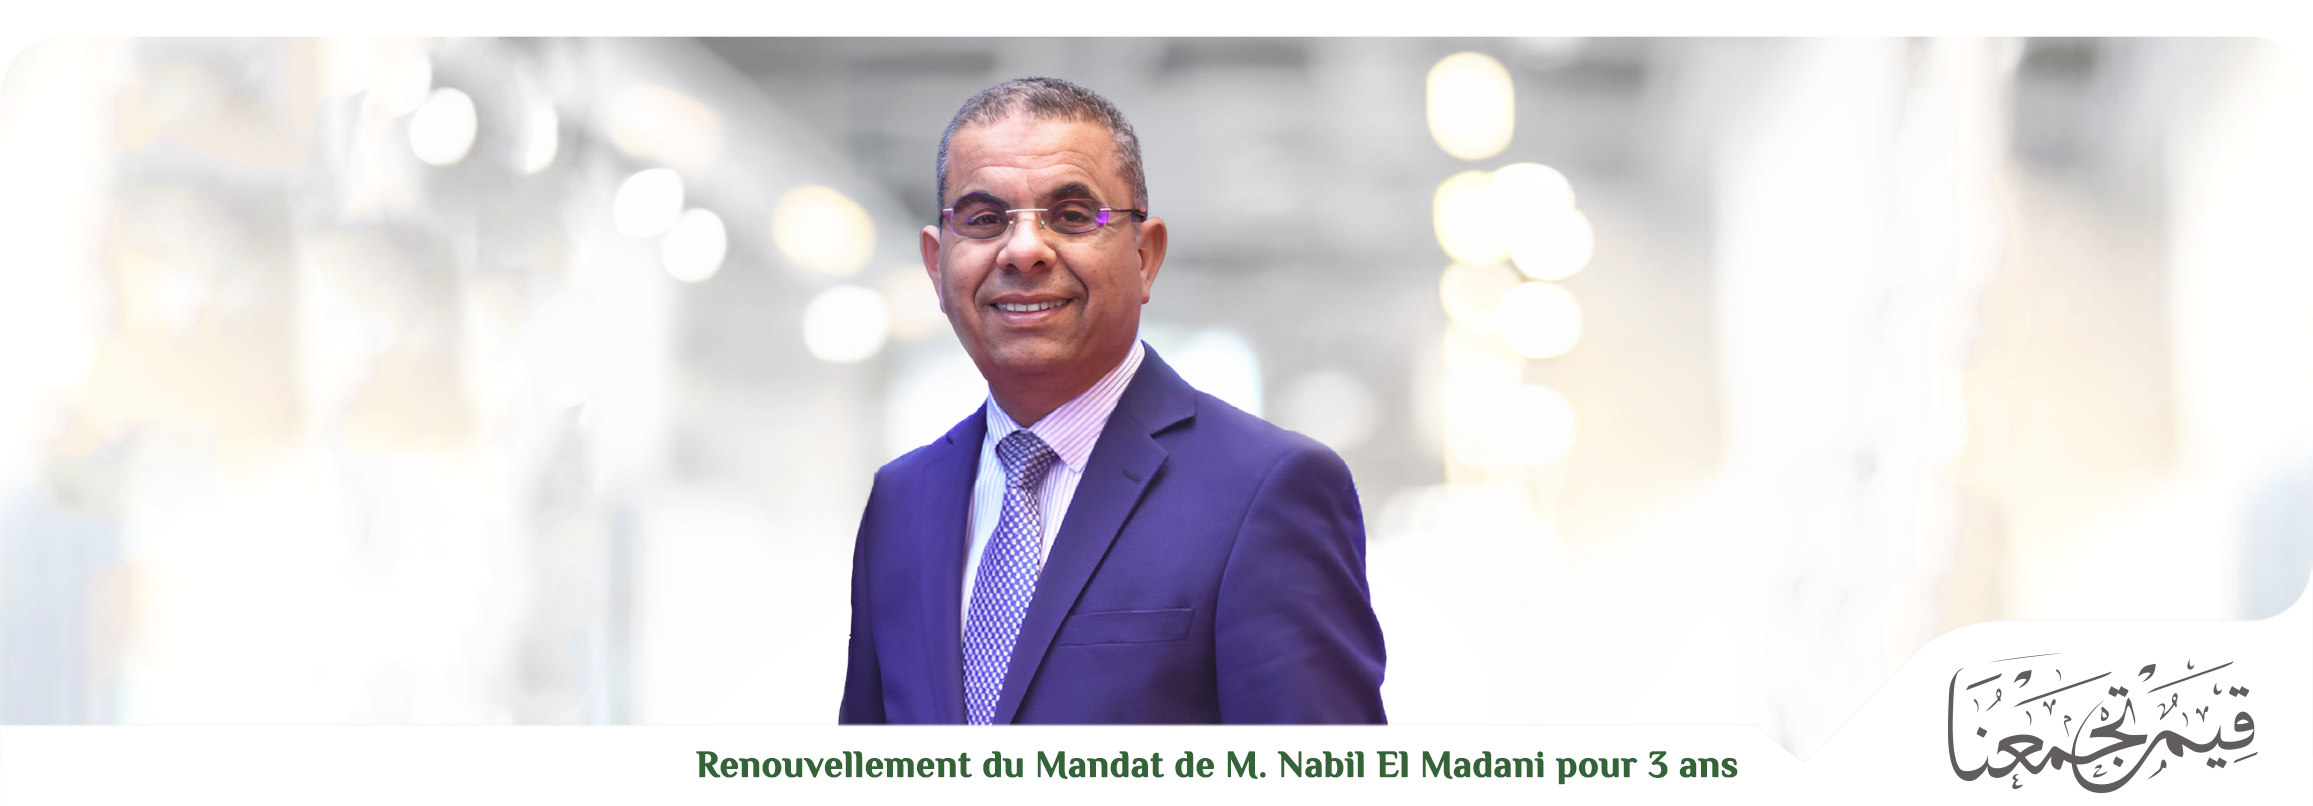  تجديد الثقة في السيد نبيل المداني، المدير العام لمصرف الزيتونة لمدّة نيابية بثلاث سنوات 